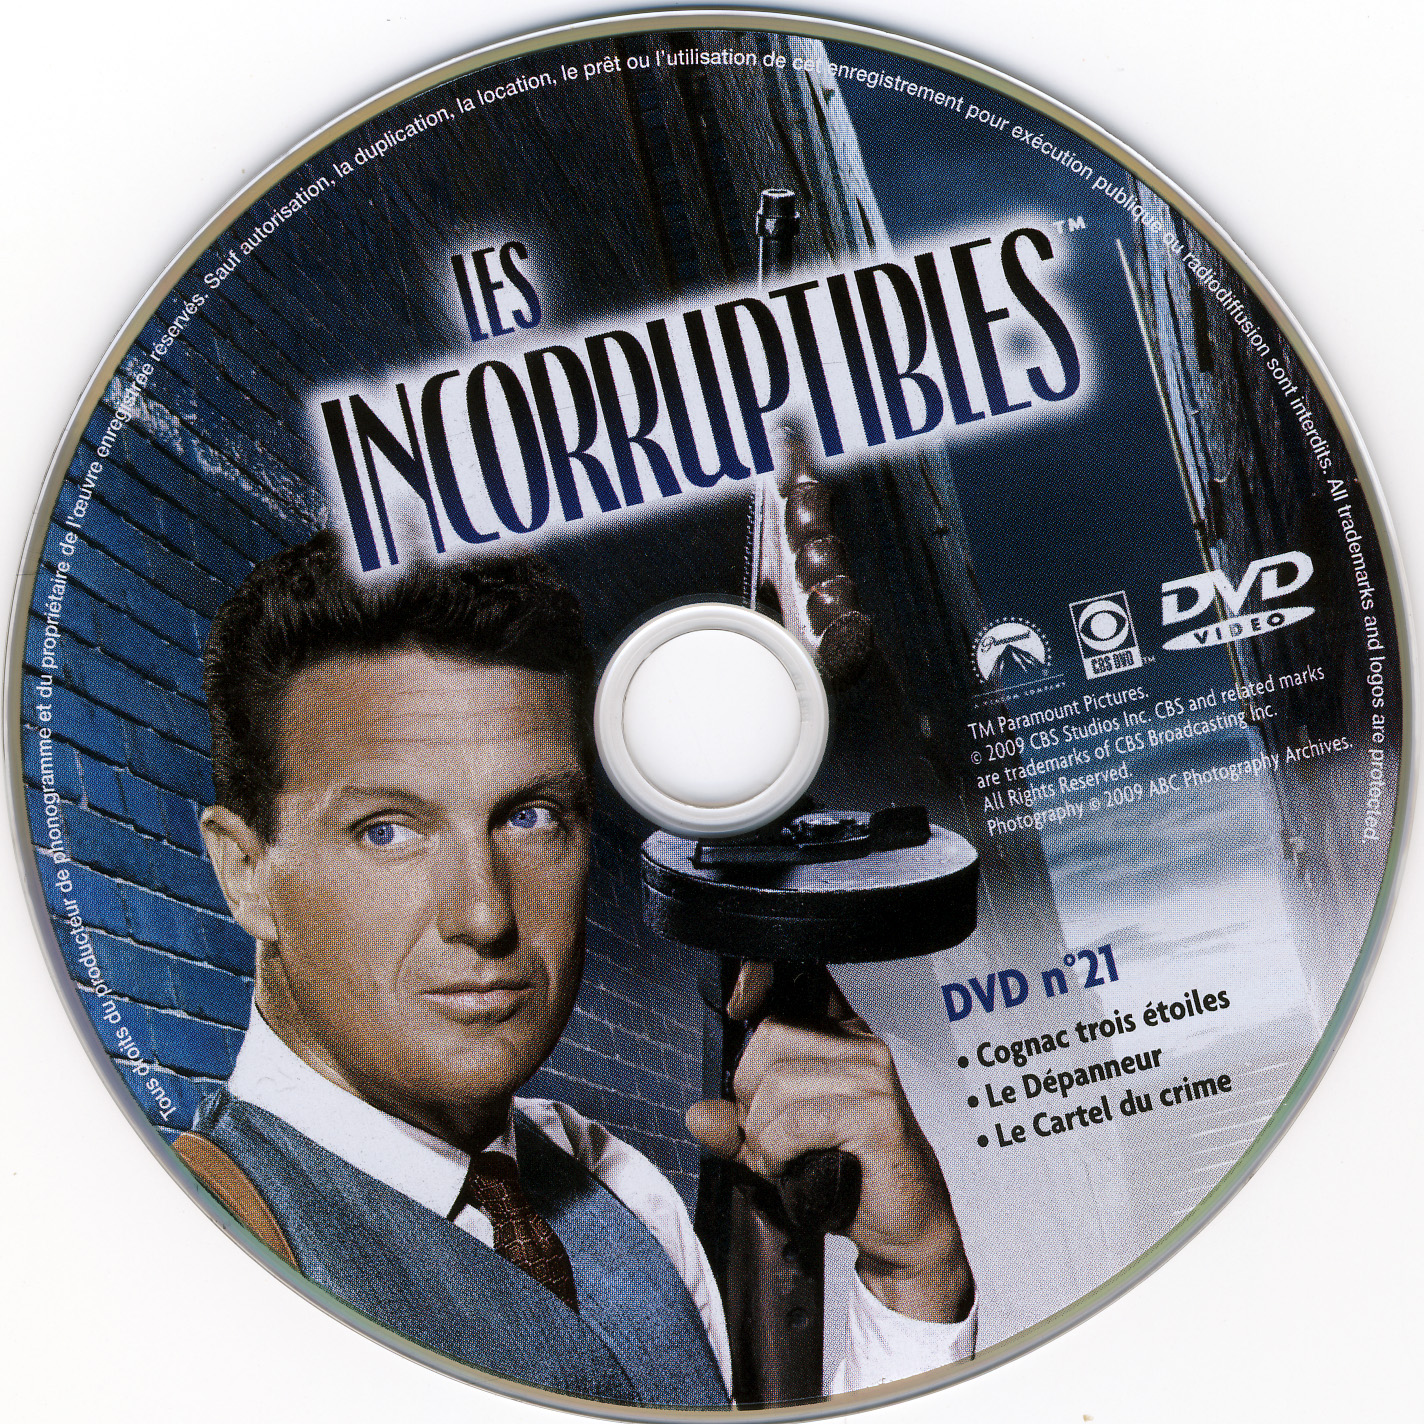 Les incorruptibles intgrale DVD 21